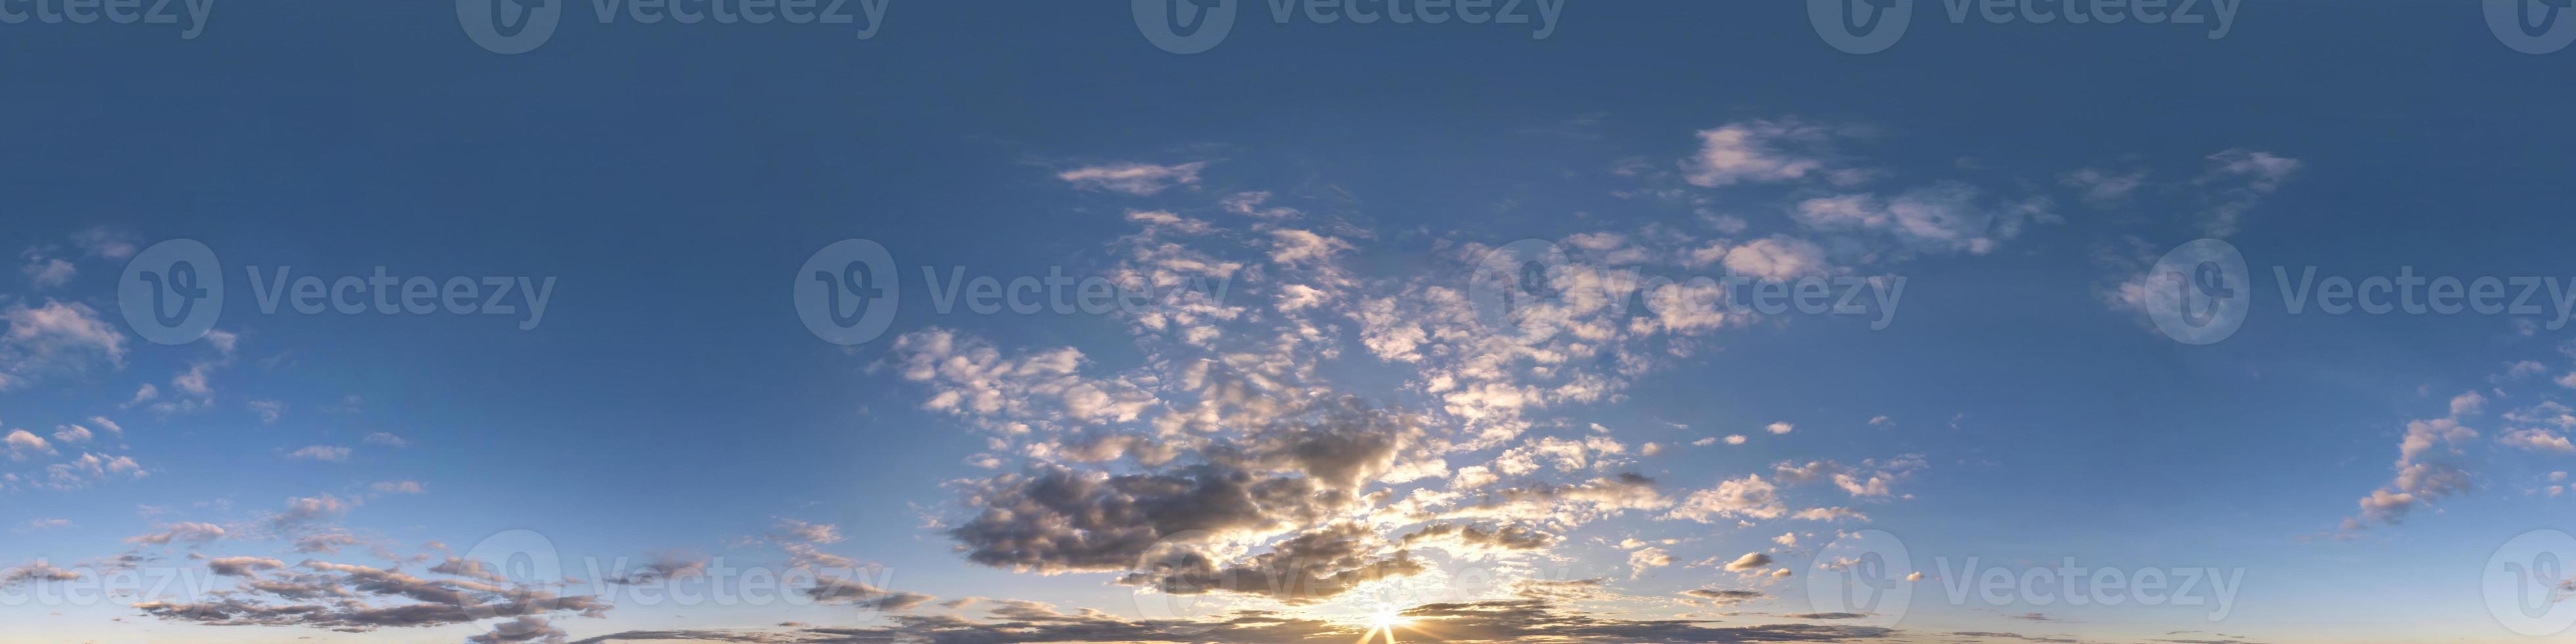 nahtloser abendlicher blauer himmel hdri panorama 360-grad-winkelansicht mit zenit und schönen wolken zur verwendung in 3d-grafiken als himmelskuppel oder drohnenaufnahme bearbeiten foto